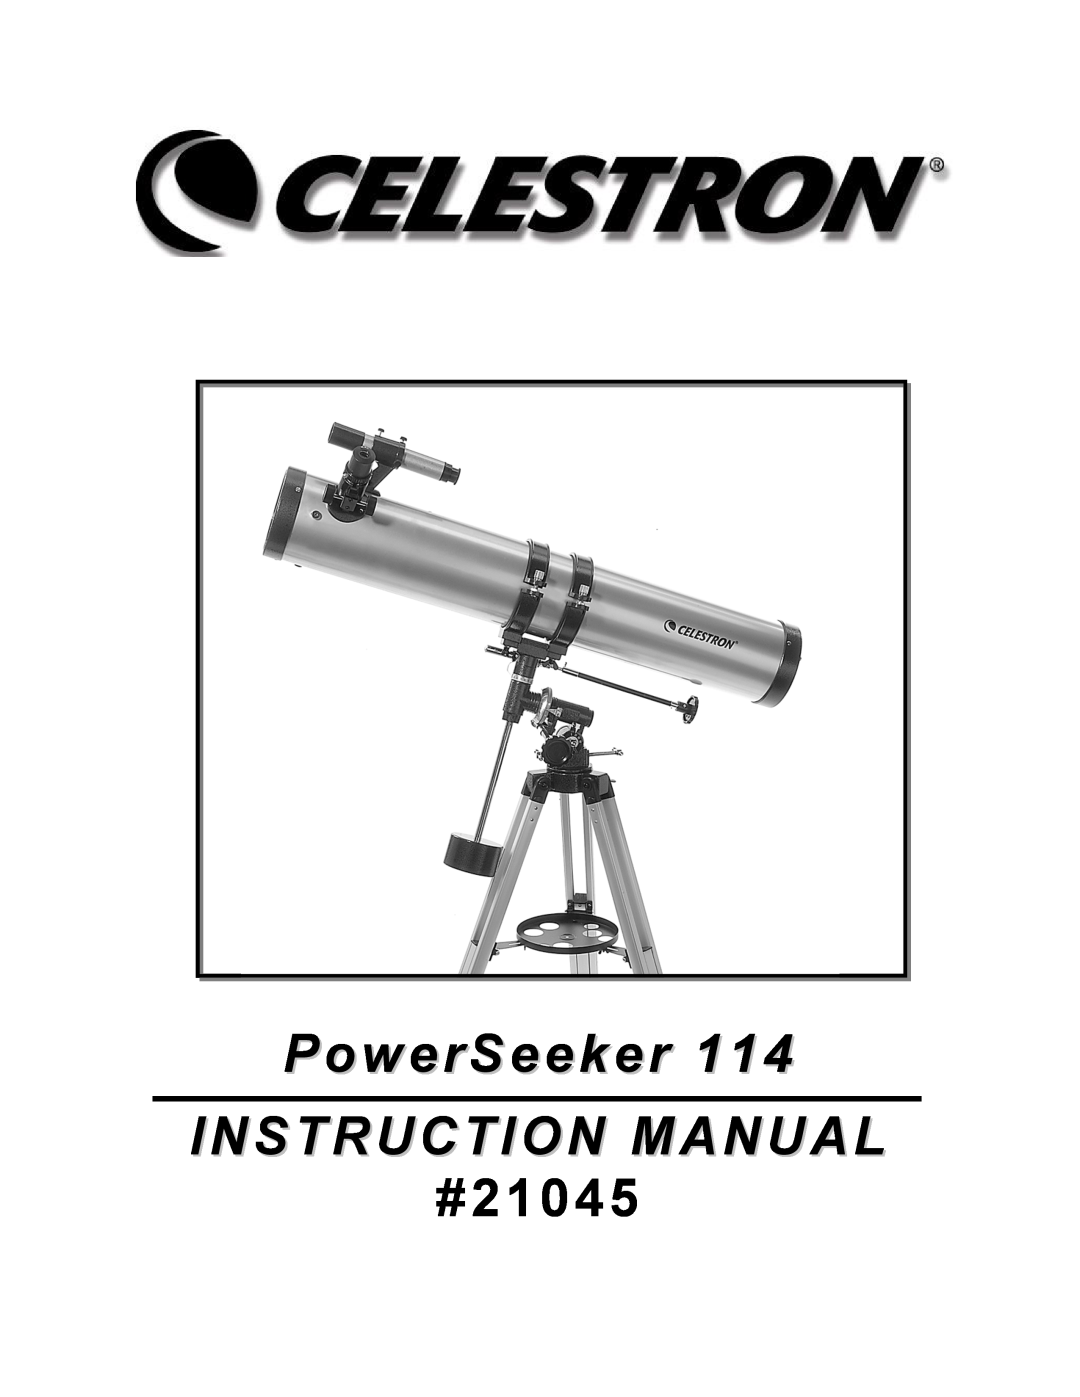 Celestron 114 manual #21045 